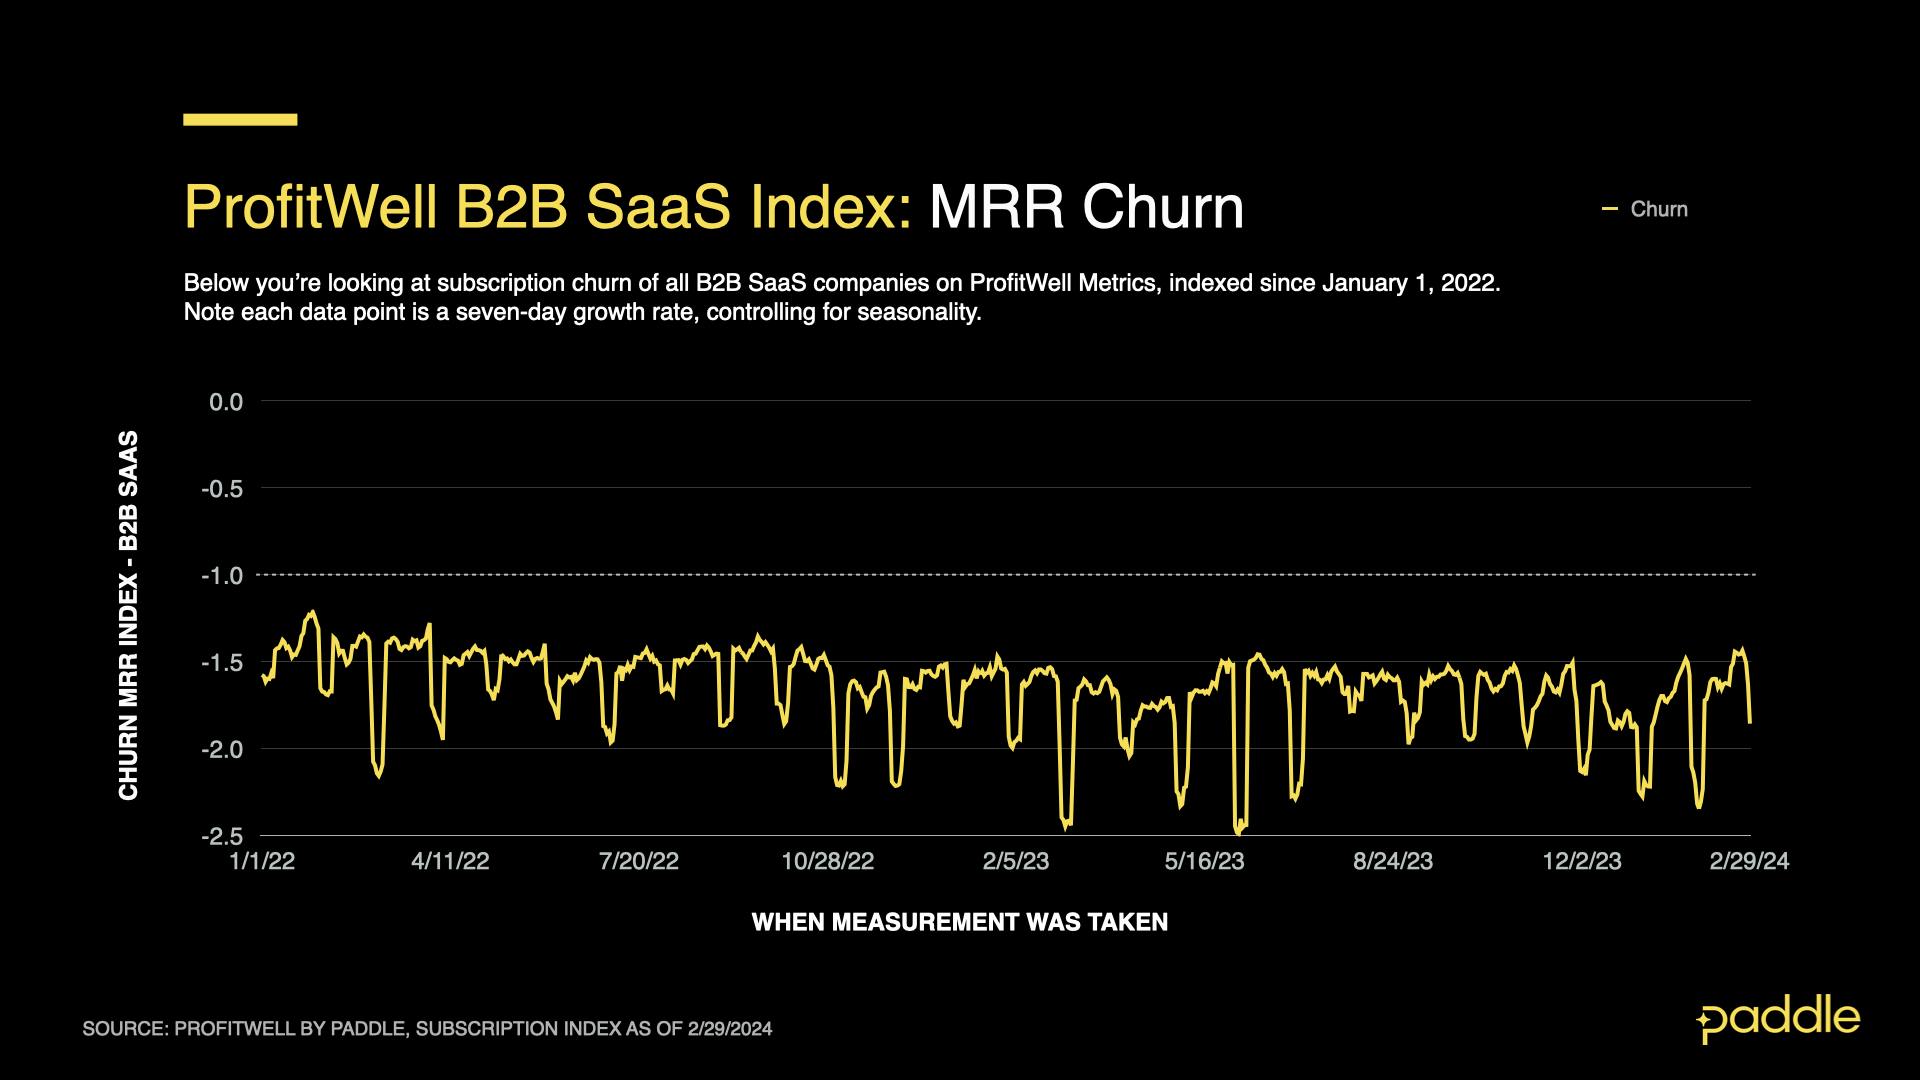 ProfitWell B2B SaaS Index shows MRR churn declining